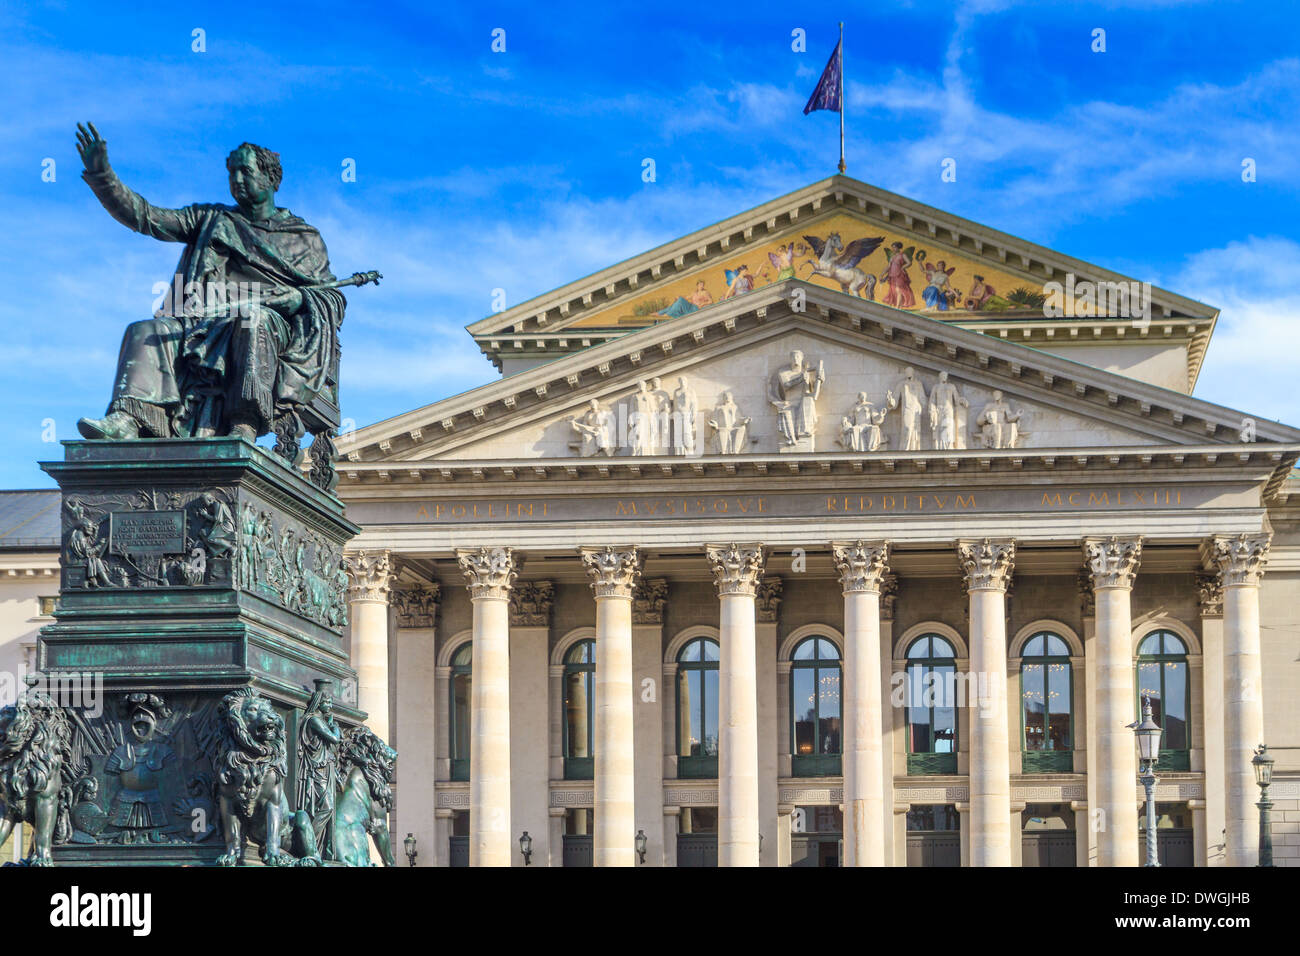 Munich, Bavarian State Opera / Bayerische Staatsoper, Germany Stock Photo